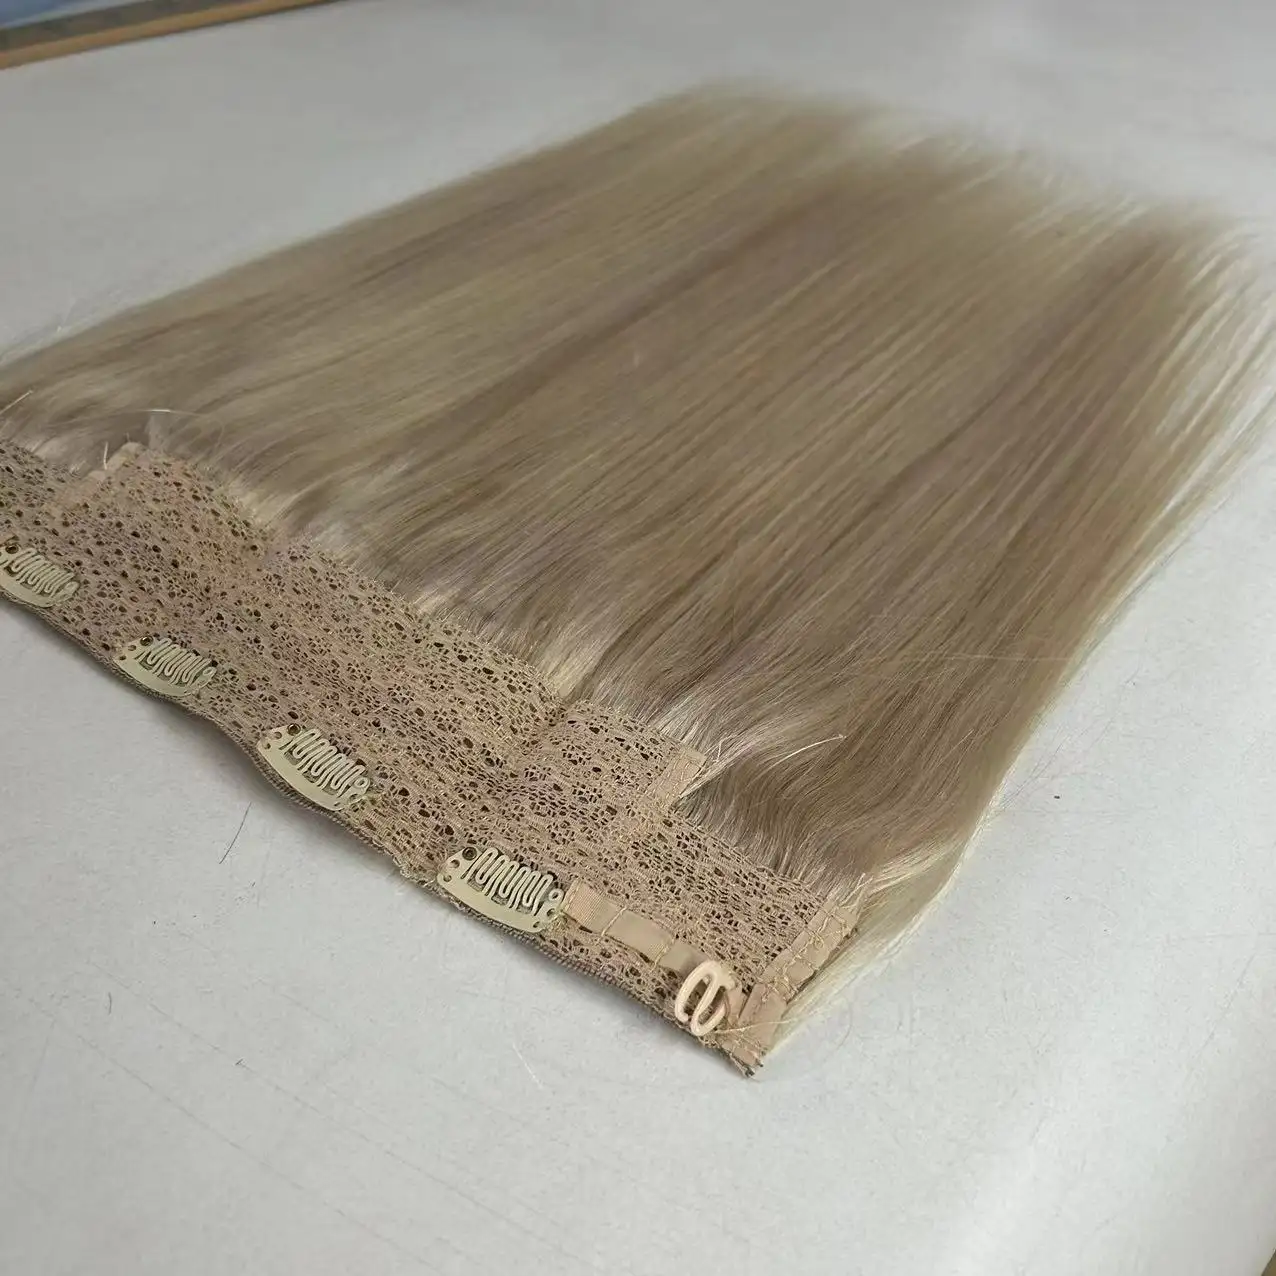 Прямые китайские волосы 100% девственные волосы Remy заколка для волос одна штука